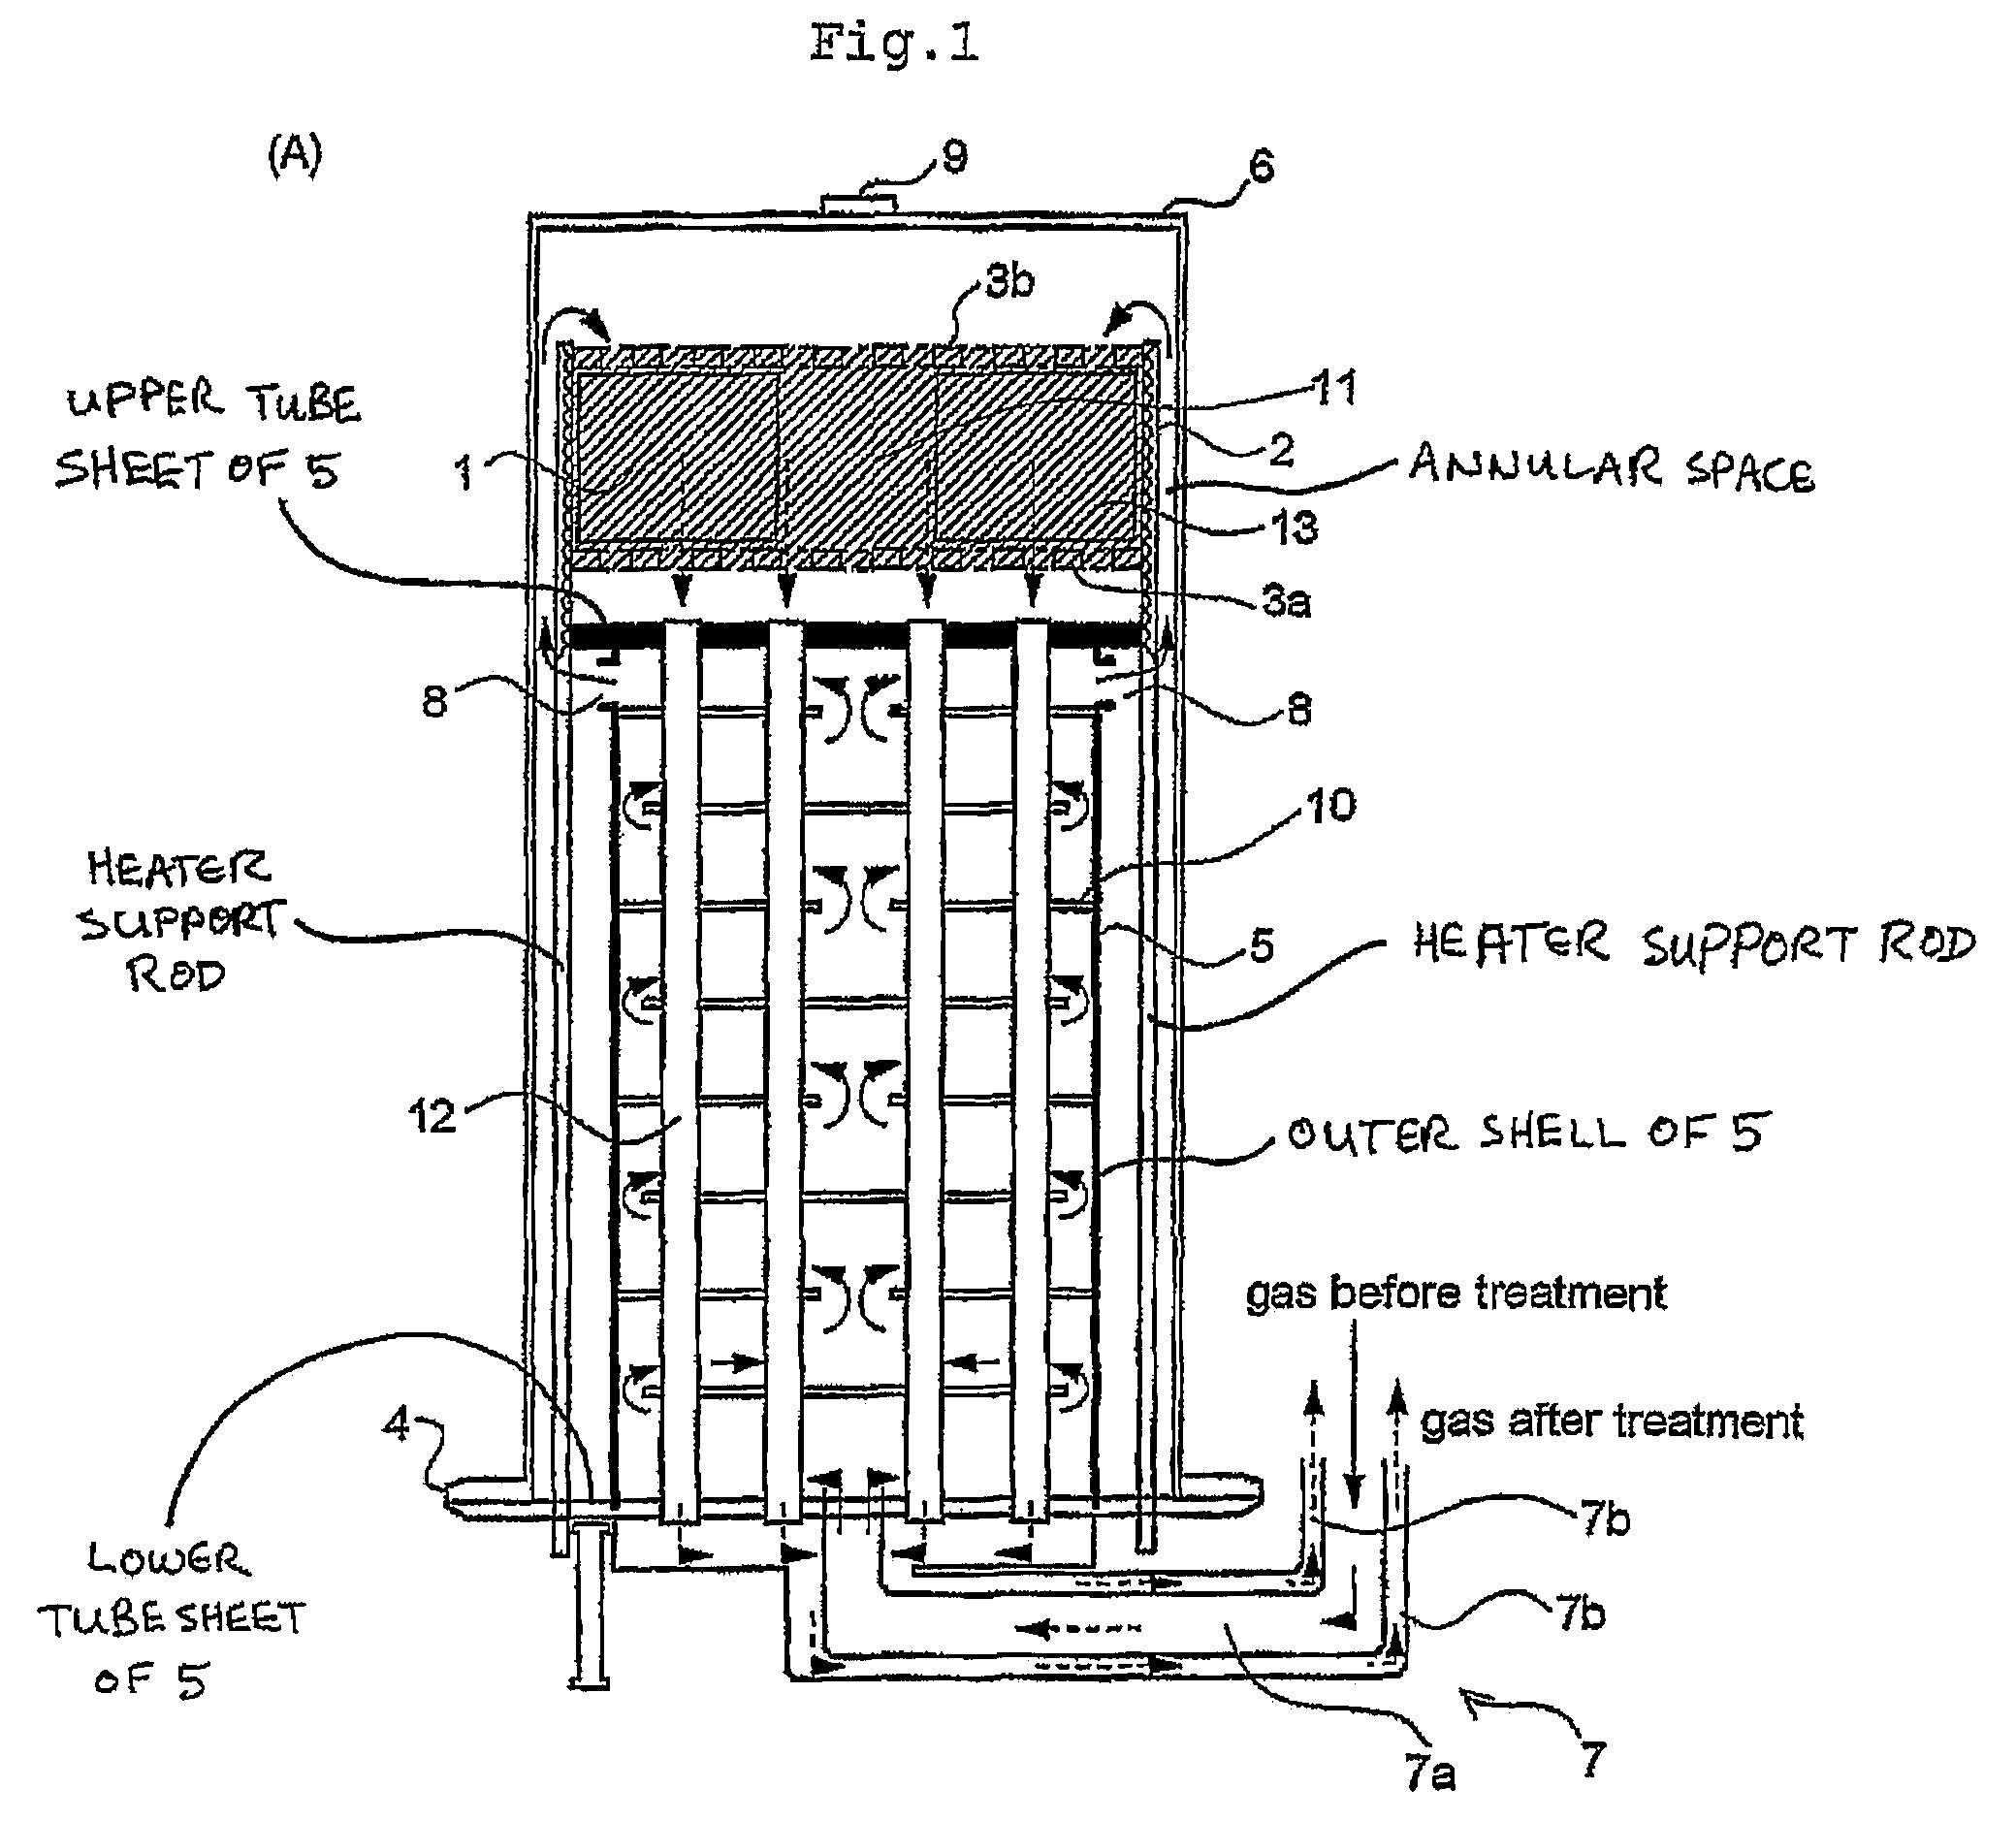 Fuel conversion reactor